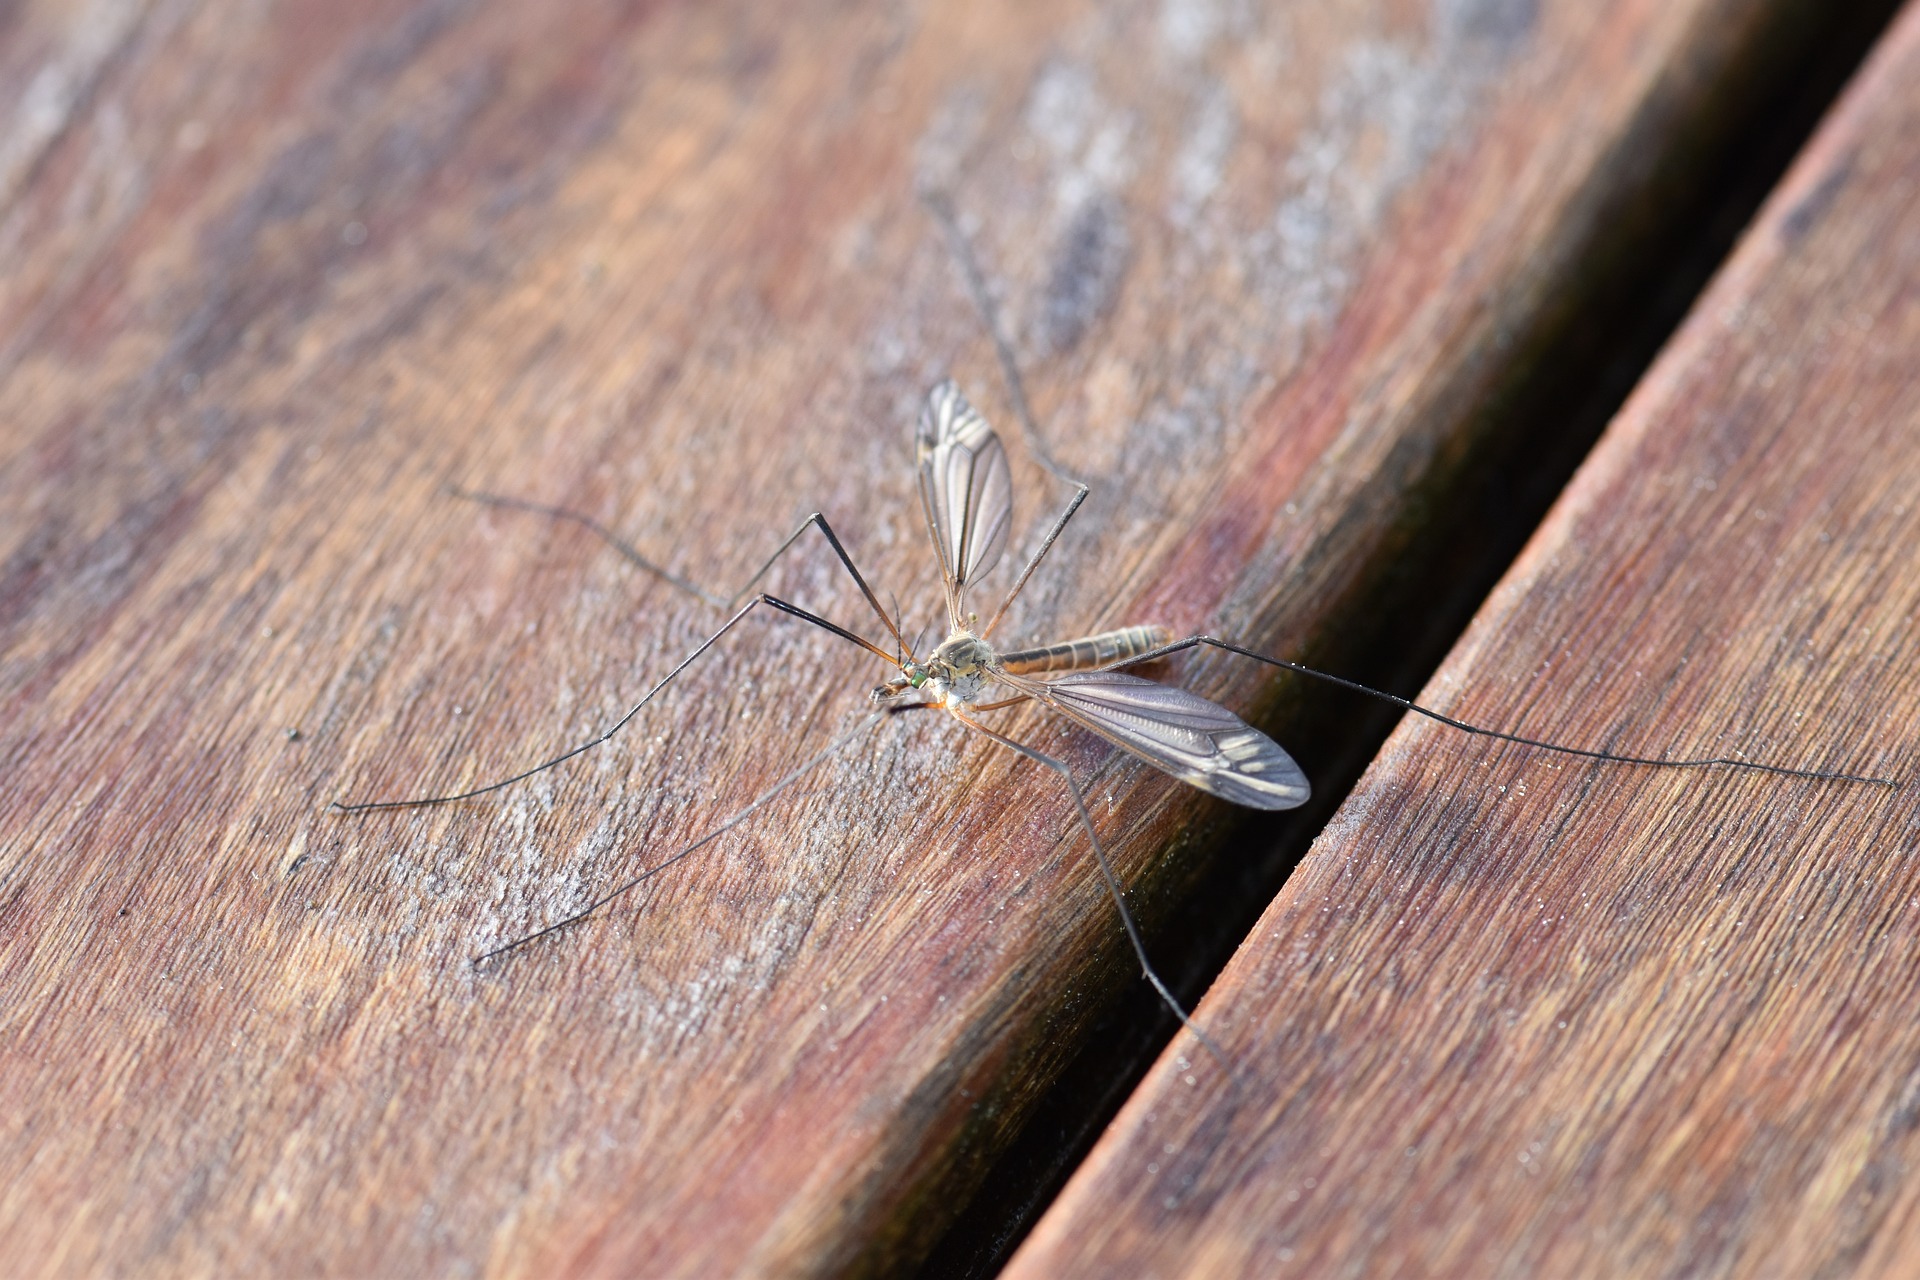 Non far entrare le zanzare in casa